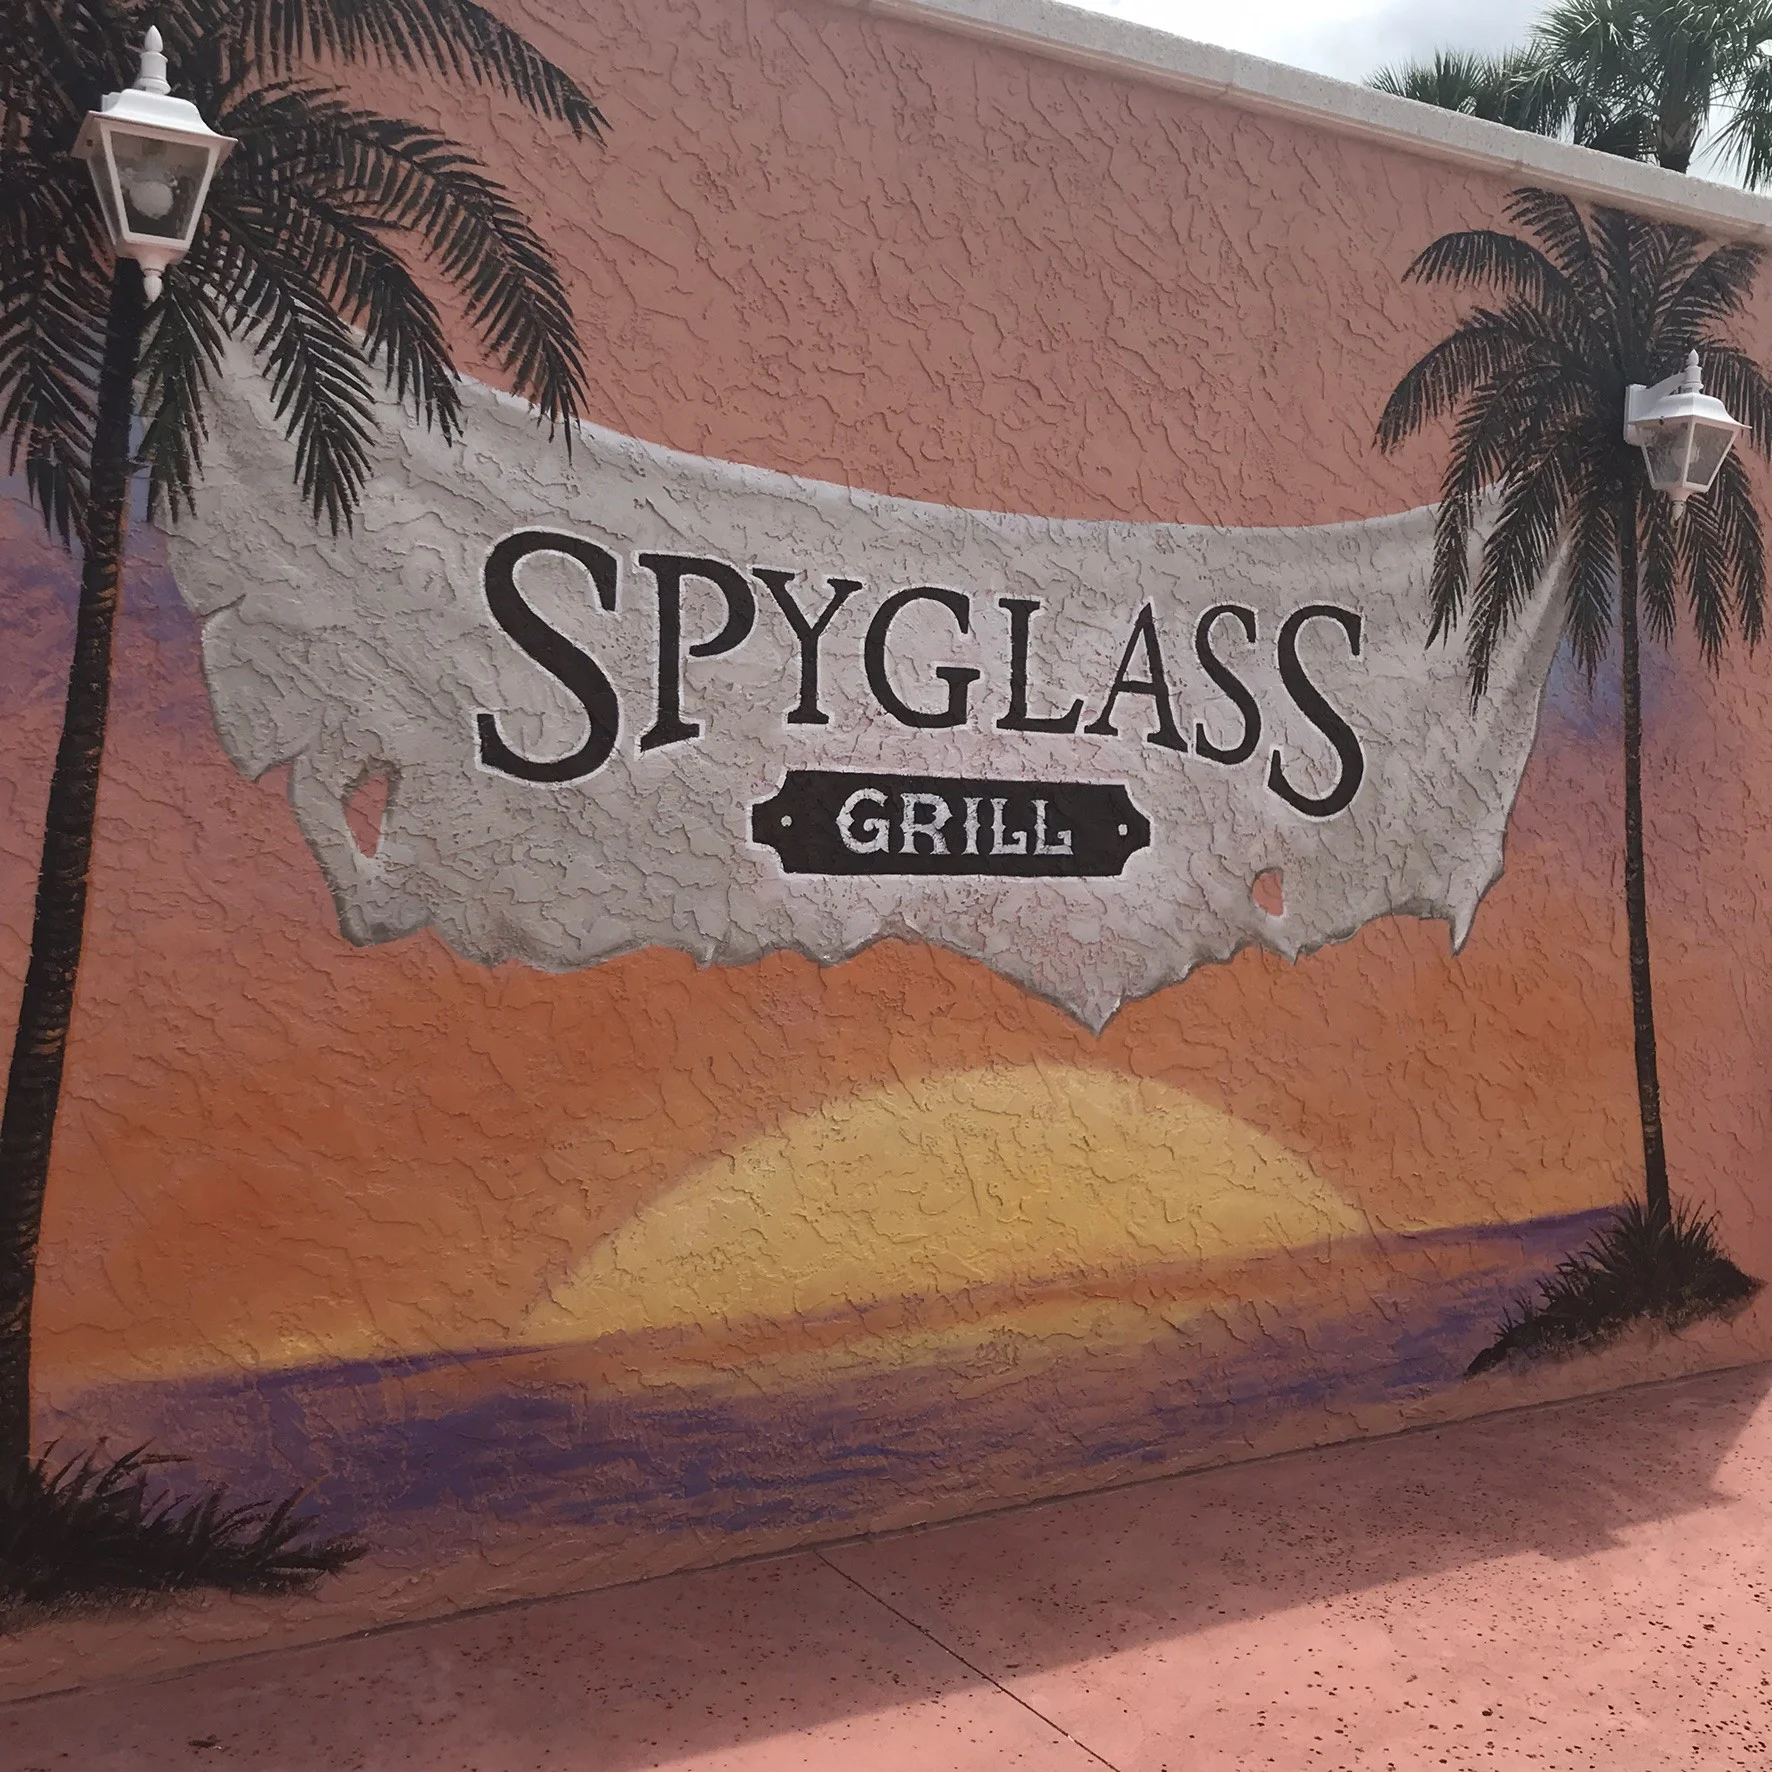 Spyglass Grill